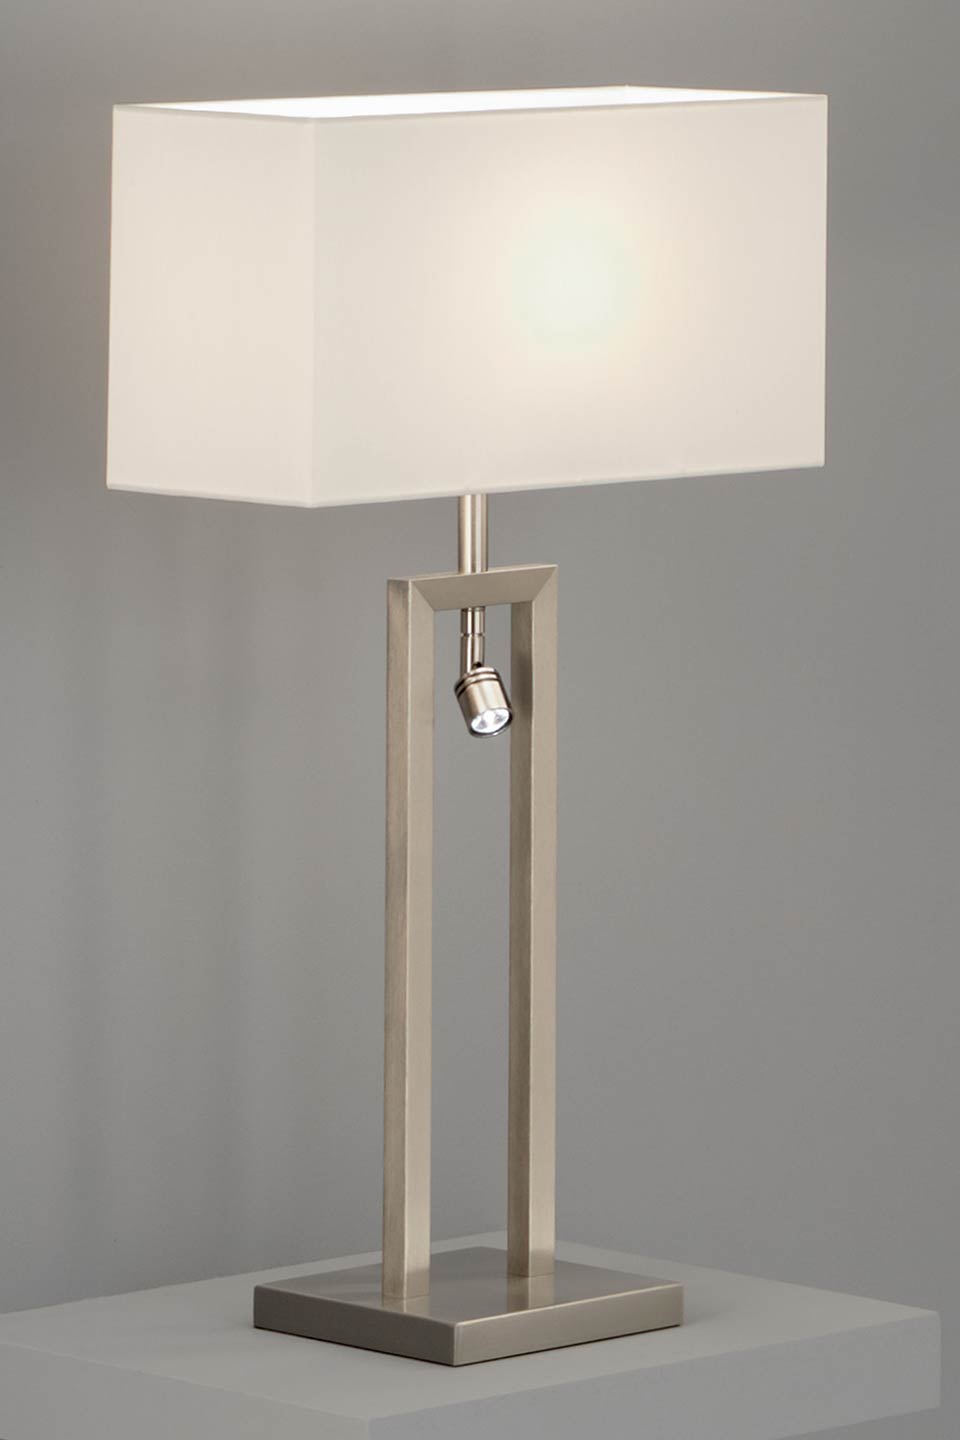 lampadaire liseuse Flurlampe DEL lampe avec interrupteur Wandspot abat-jour blanc